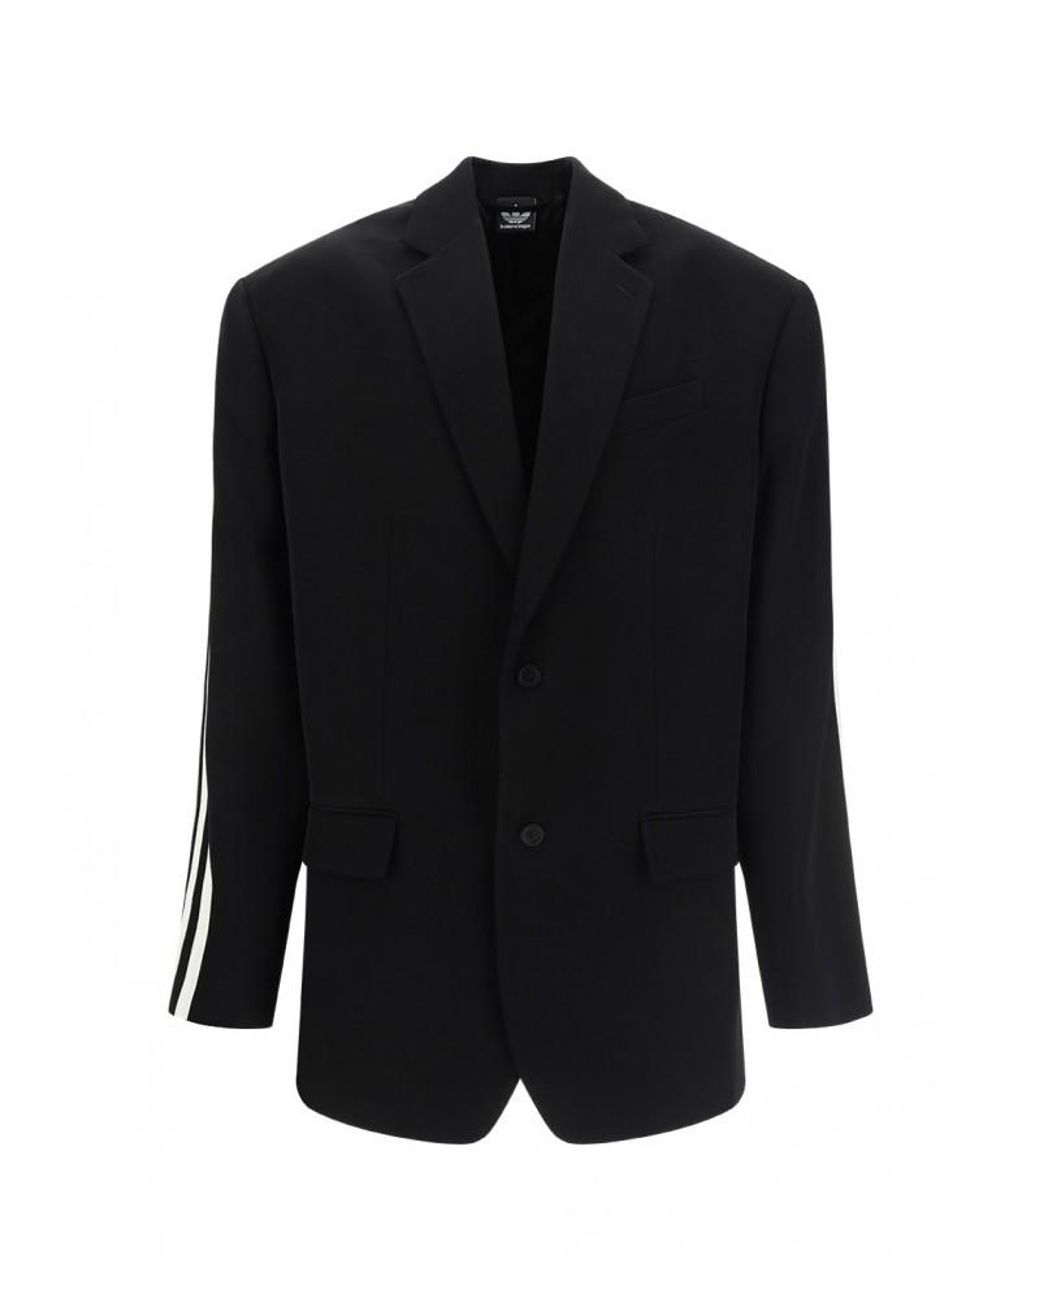 Balenciaga X Adidas Blazer Jacket in Black for Men | Lyst